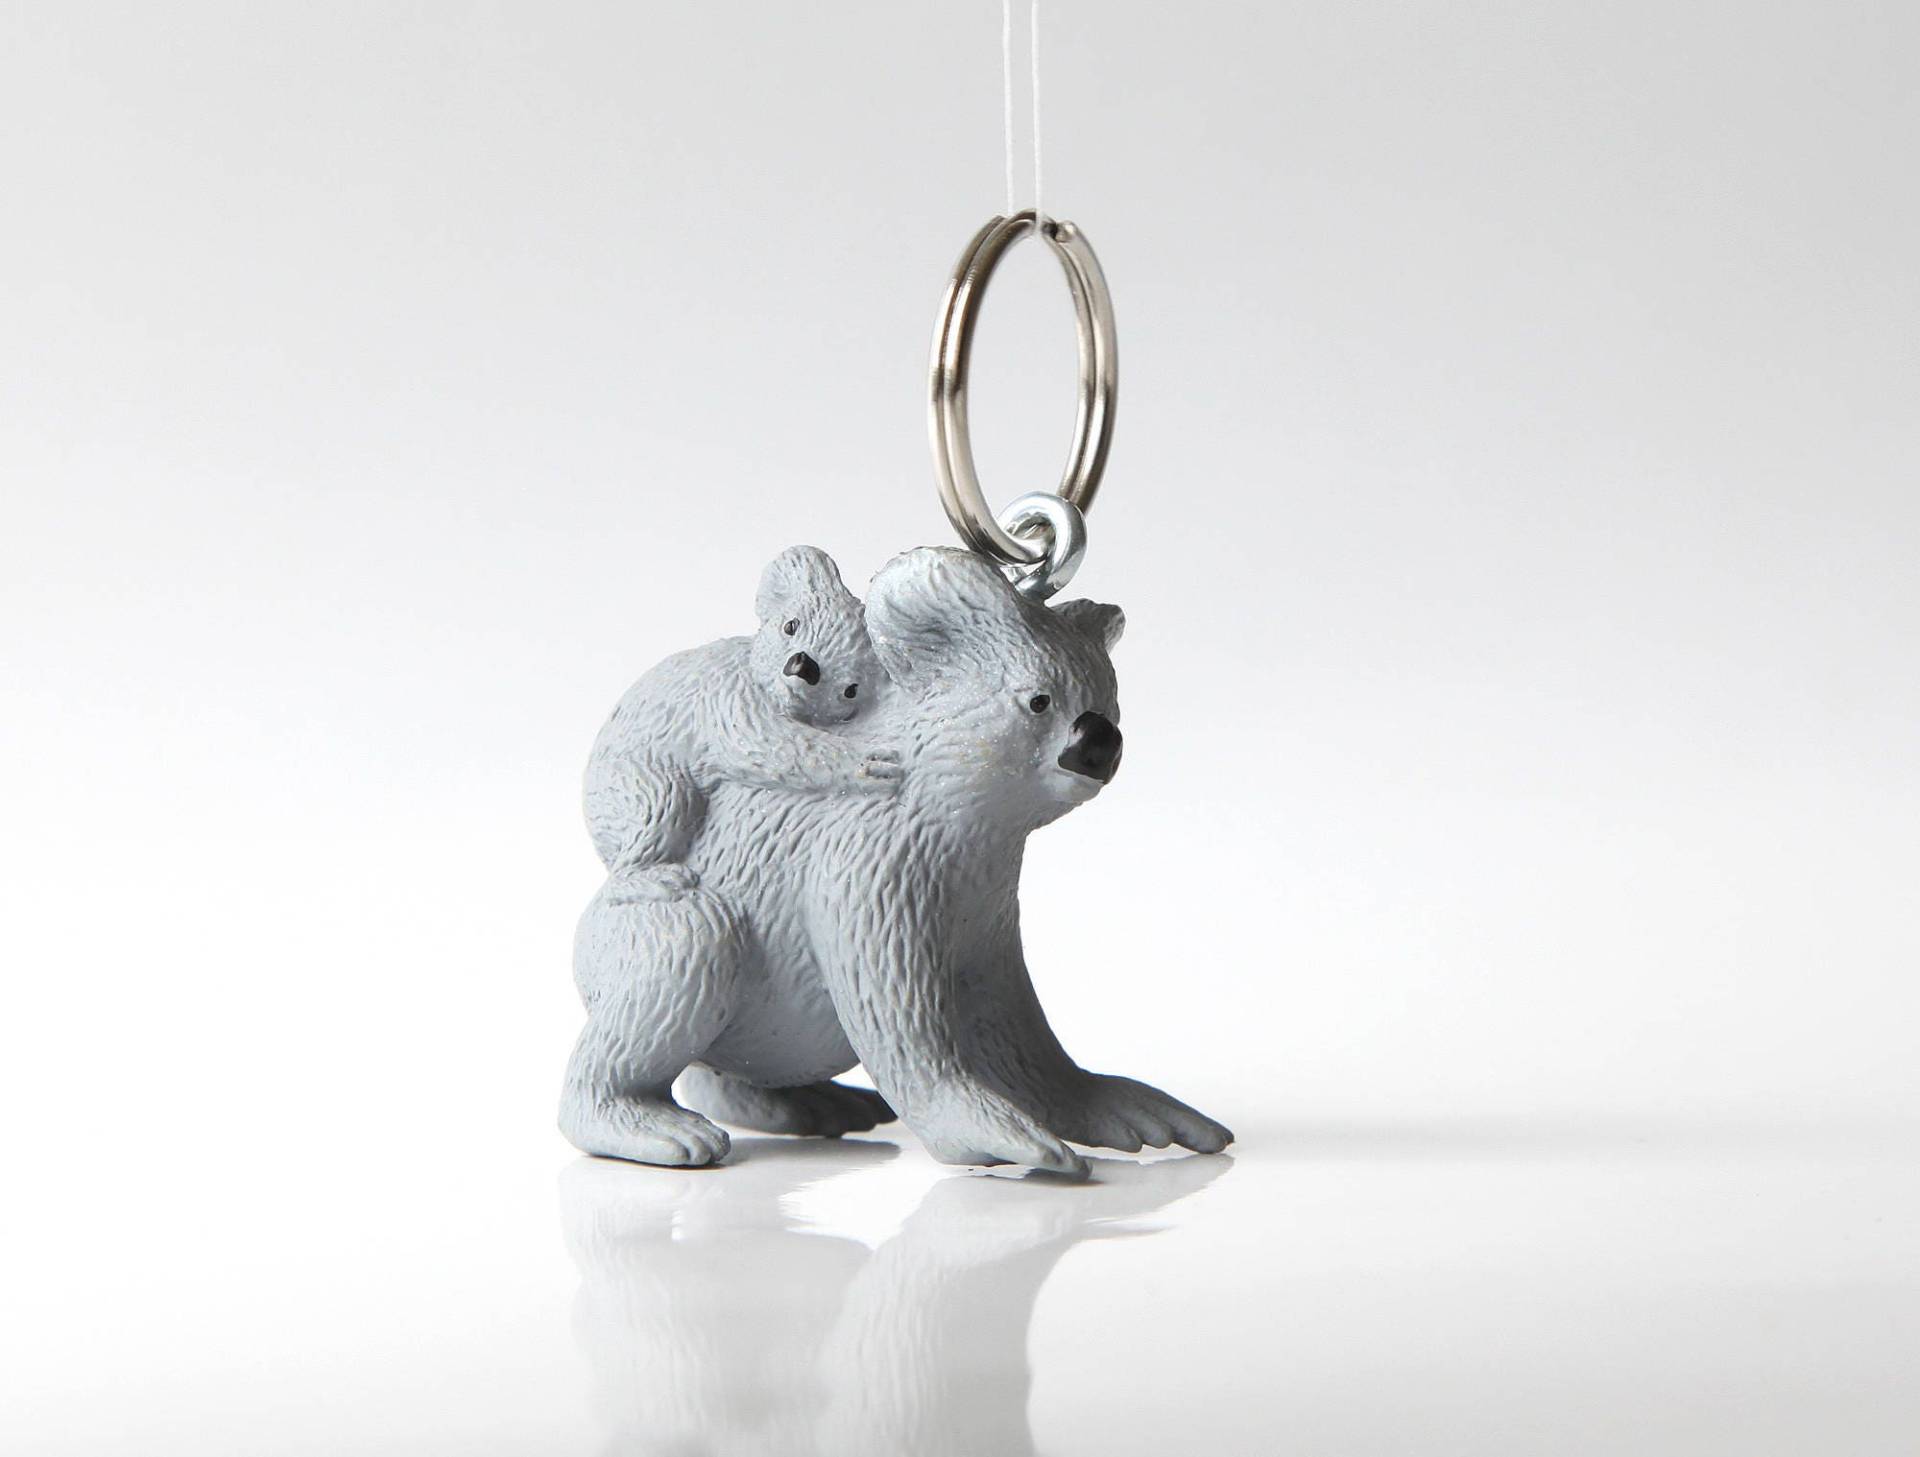 Schlüsselanhänger "Koala" von blancANIMALS